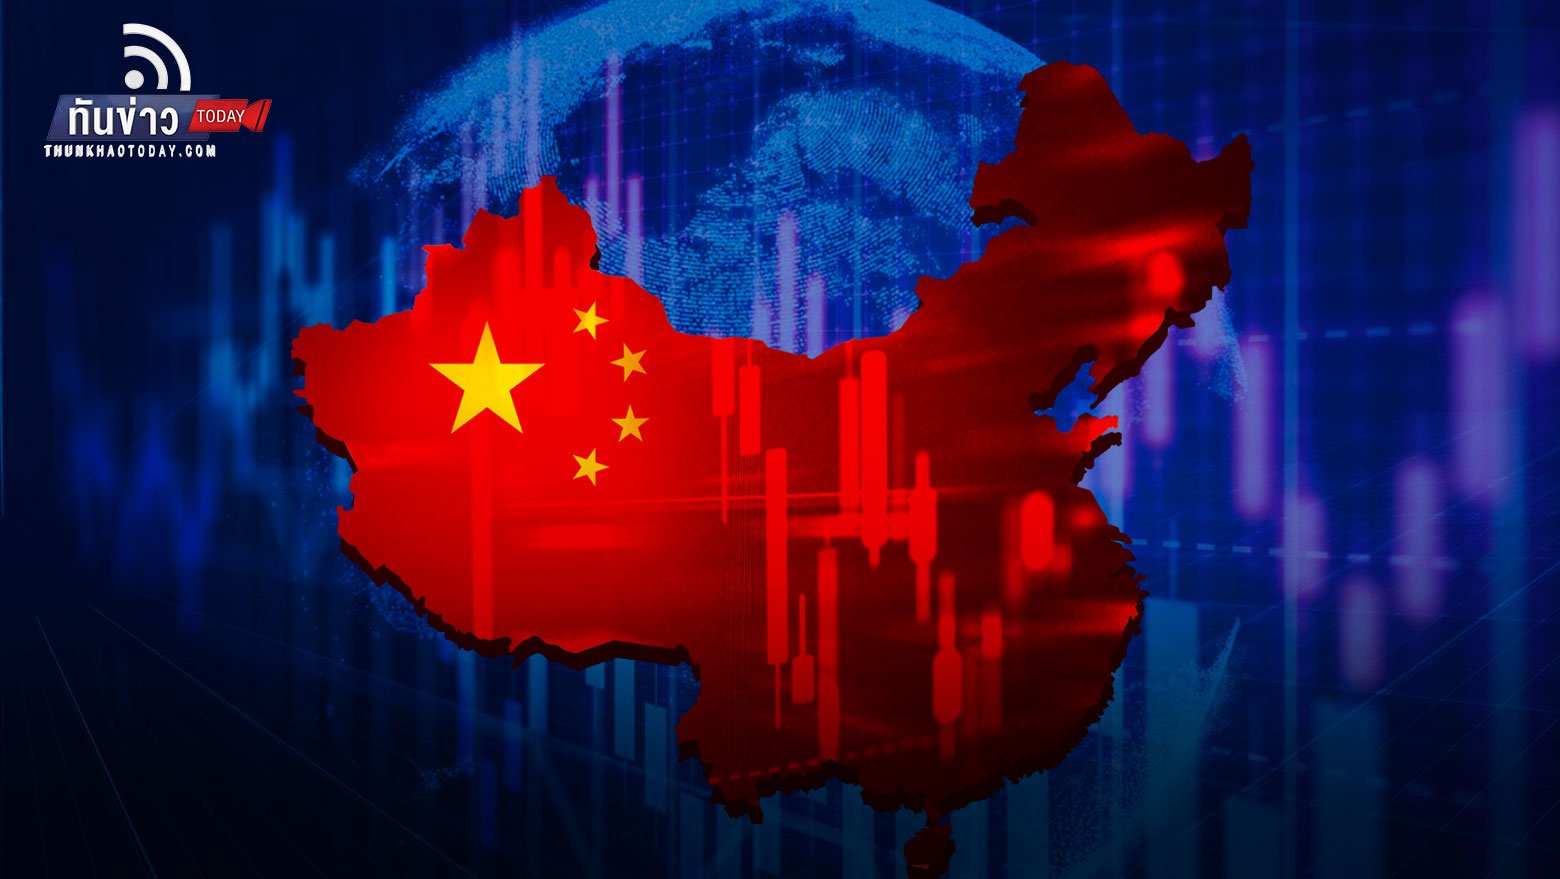 กองทุนหุ้นจีนติดลบ 15.5% ต่ำสุดในรอบ 3 เดือน หลังการประกาศมี 5 บริษัทเทคจีนอาจถูกเพิกถอนจากตลาดหุ้นสหรัฐ